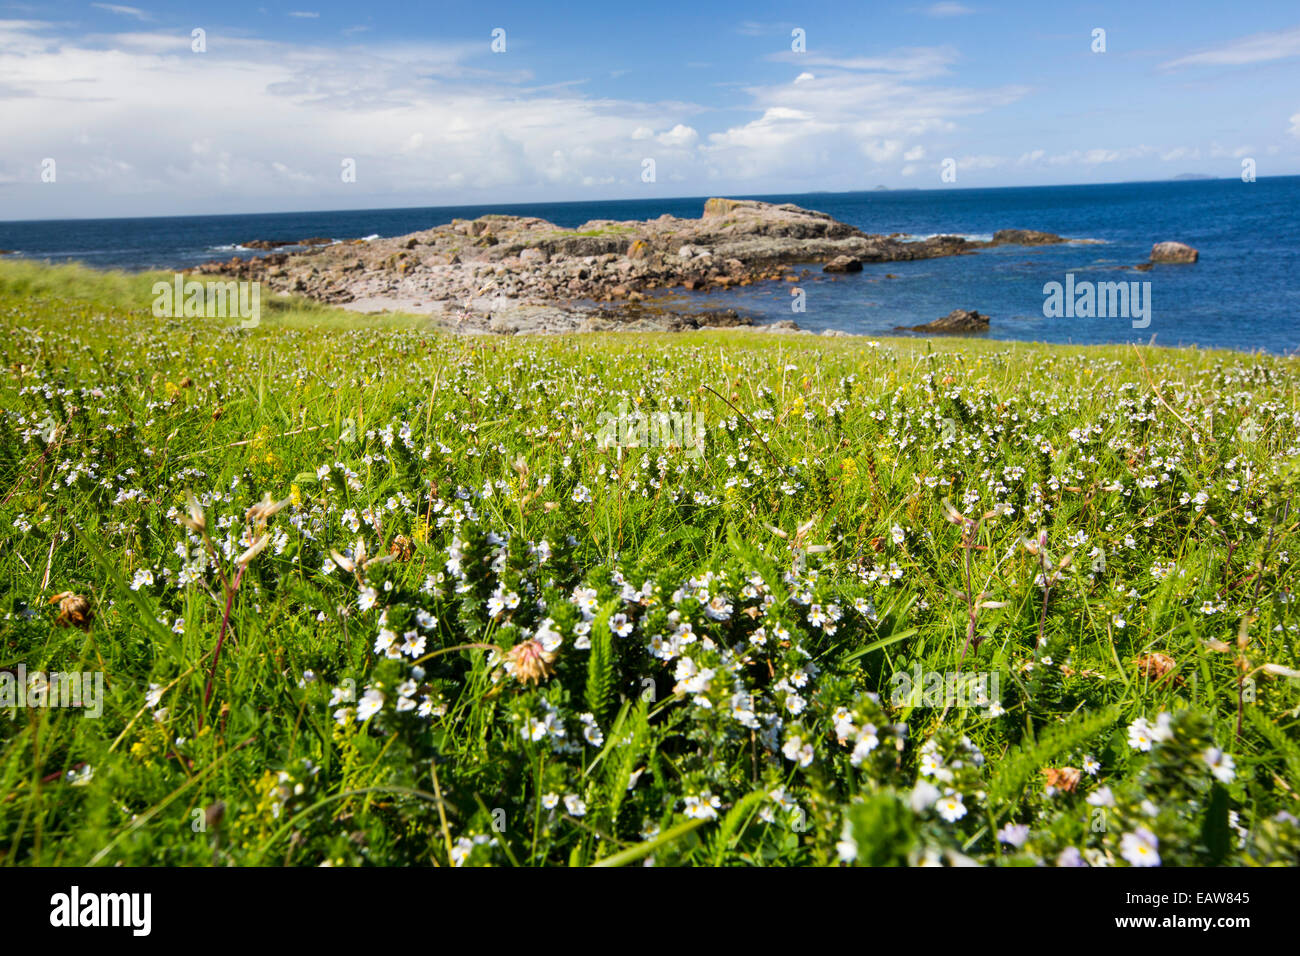 Machair, una prateria sabbiosa habitat ricco di fiori selvatici unici per le isole delle Ebridi a Iona e Mull off, Scotland, Regno Unito. Foto Stock